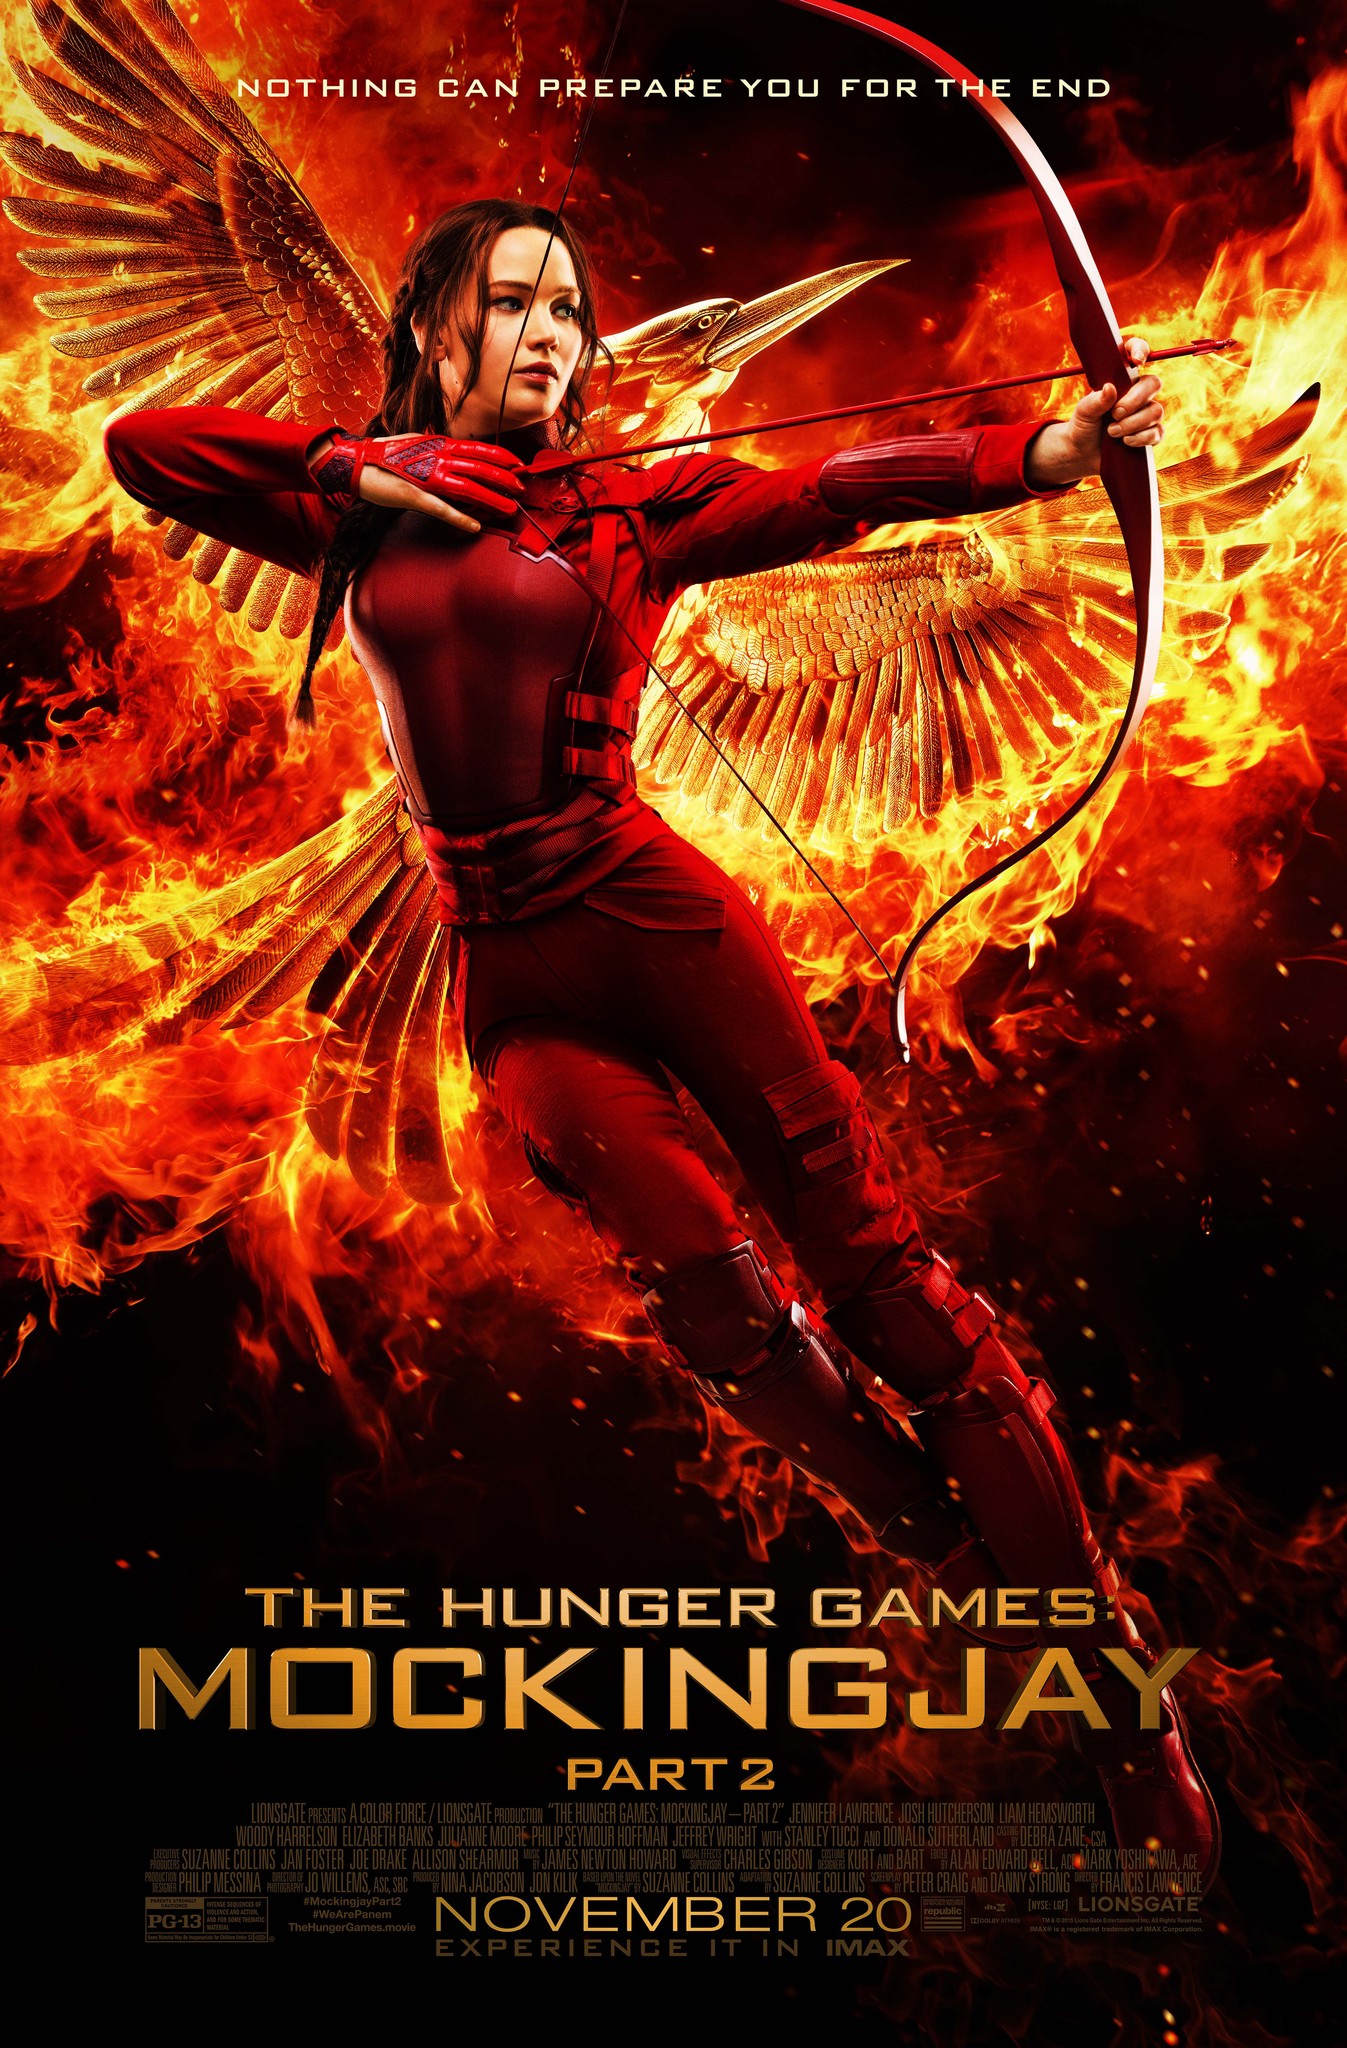 ดูหนังออนไลน์ฟรี The Hunger Games Mockingjay Part 2 เกมล่าเกม ม็อกกิ้งเจย์ พาร์ท 2 2015 พากย์ไทย